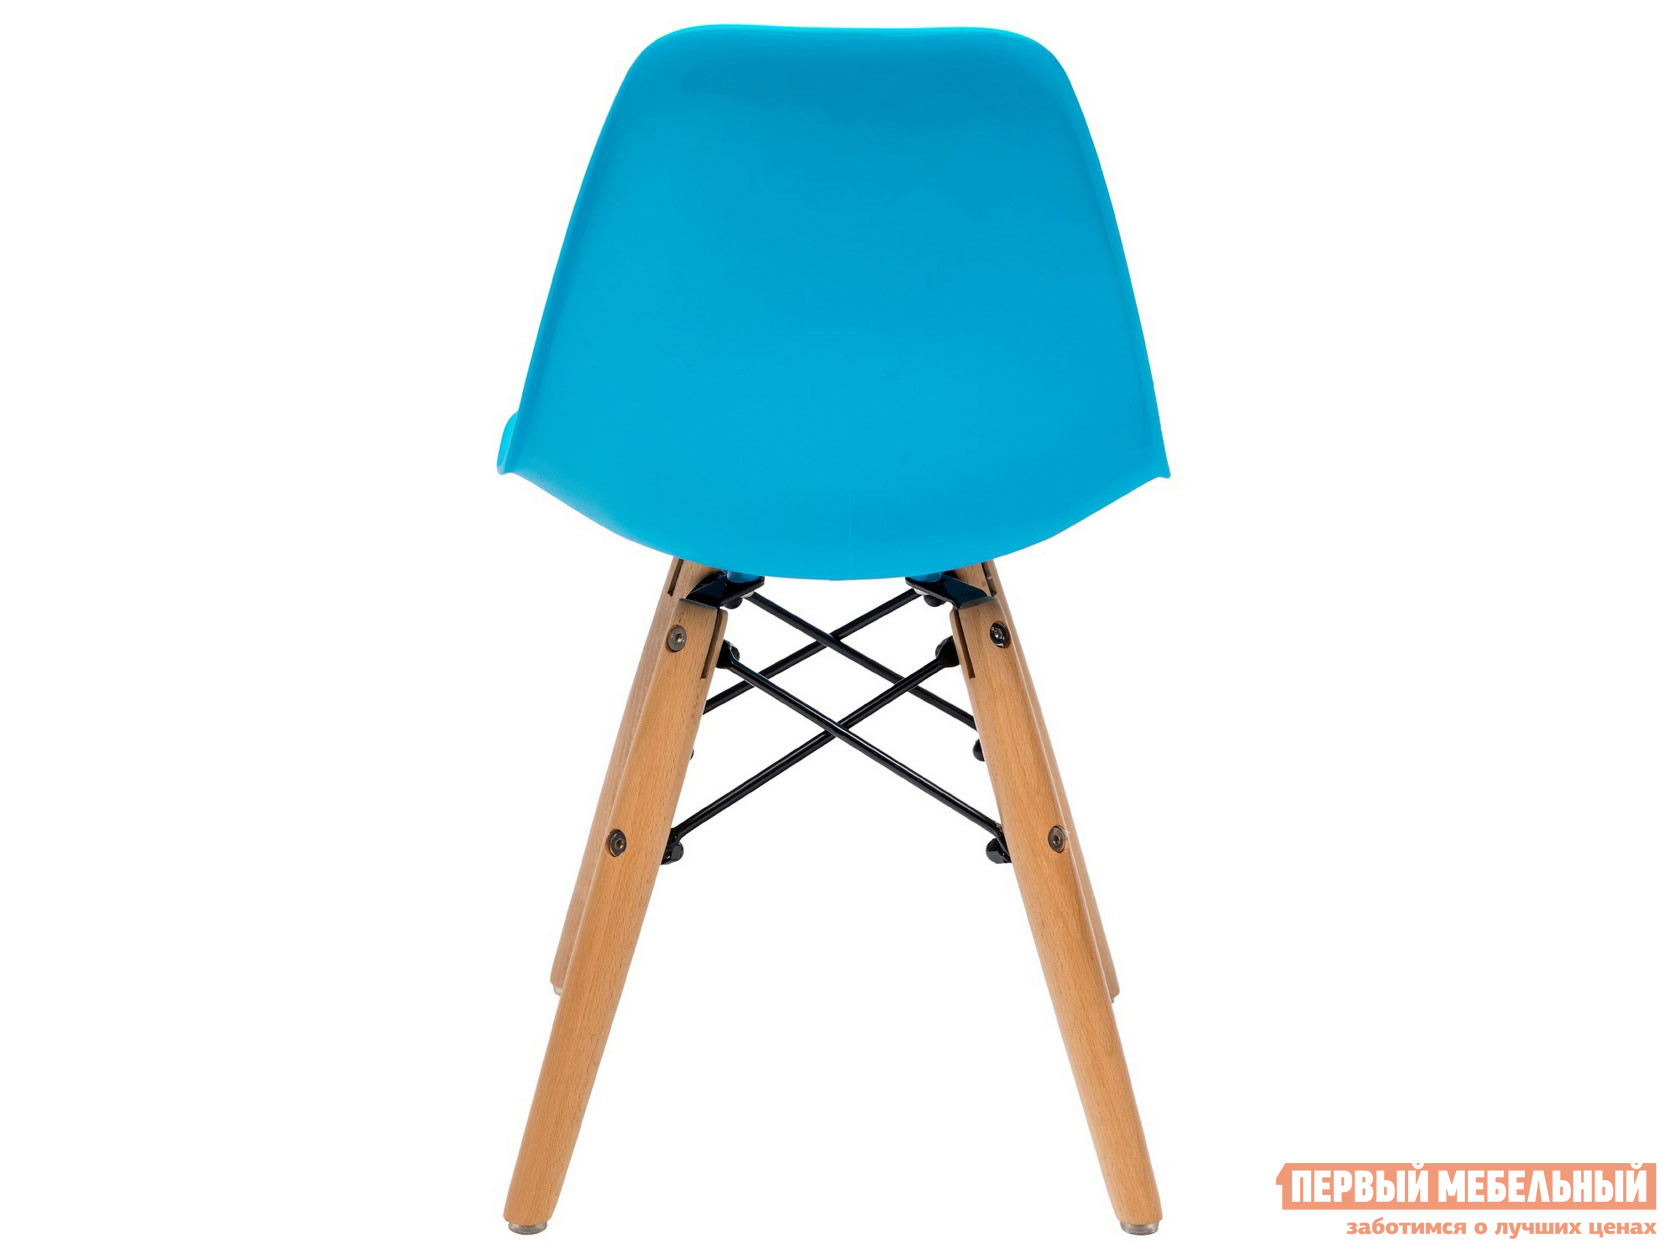 Столик и стульчик  Имс 8056 Голубой от Первый Мебельный